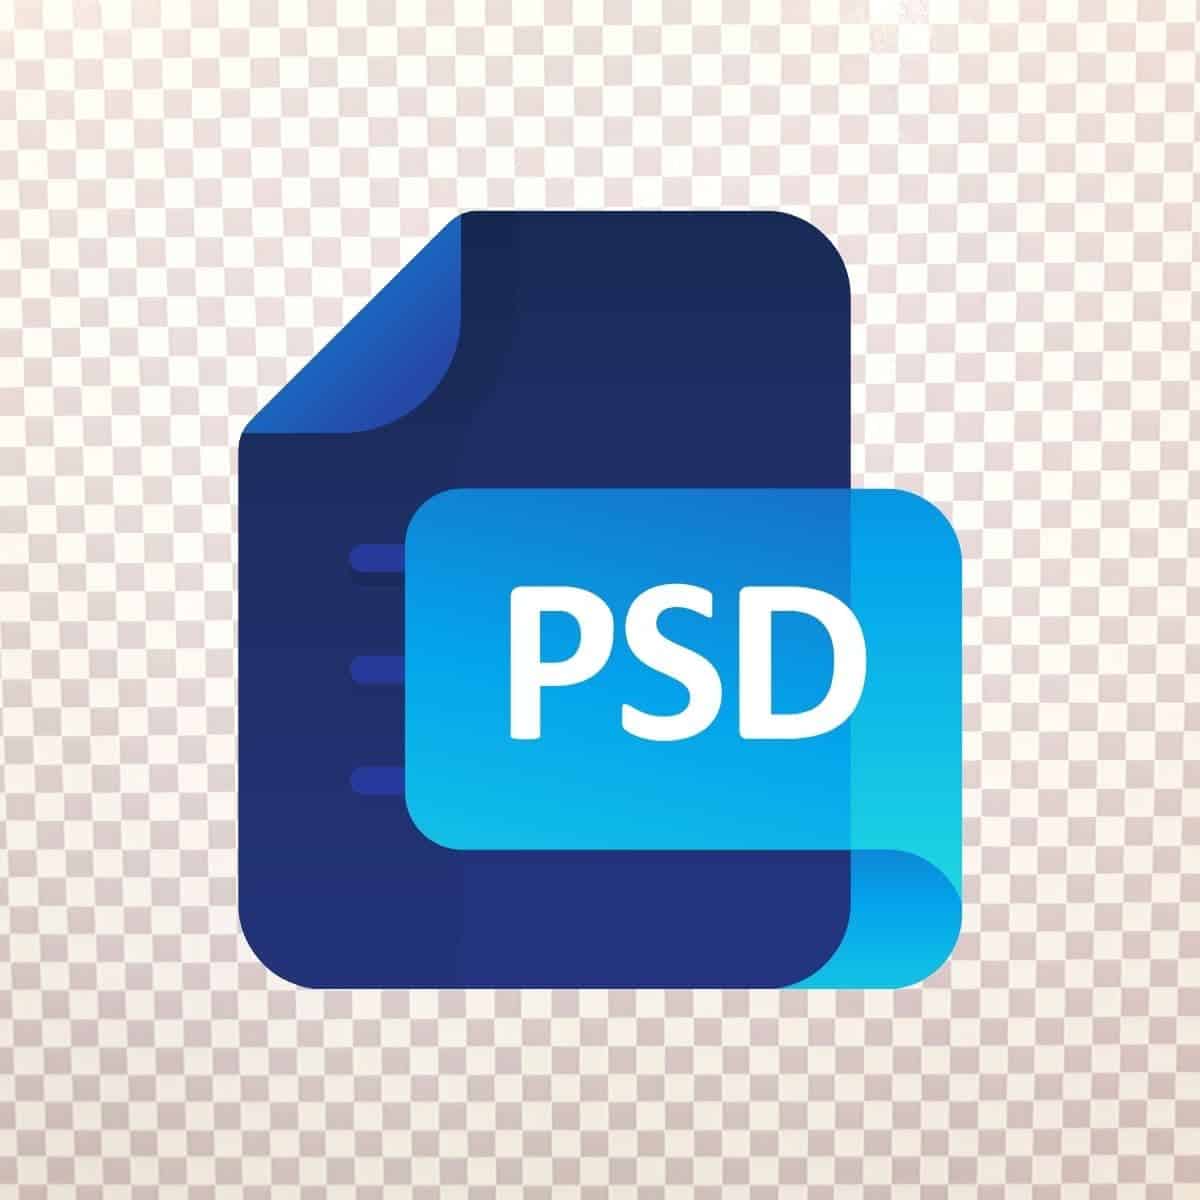 PSD file.